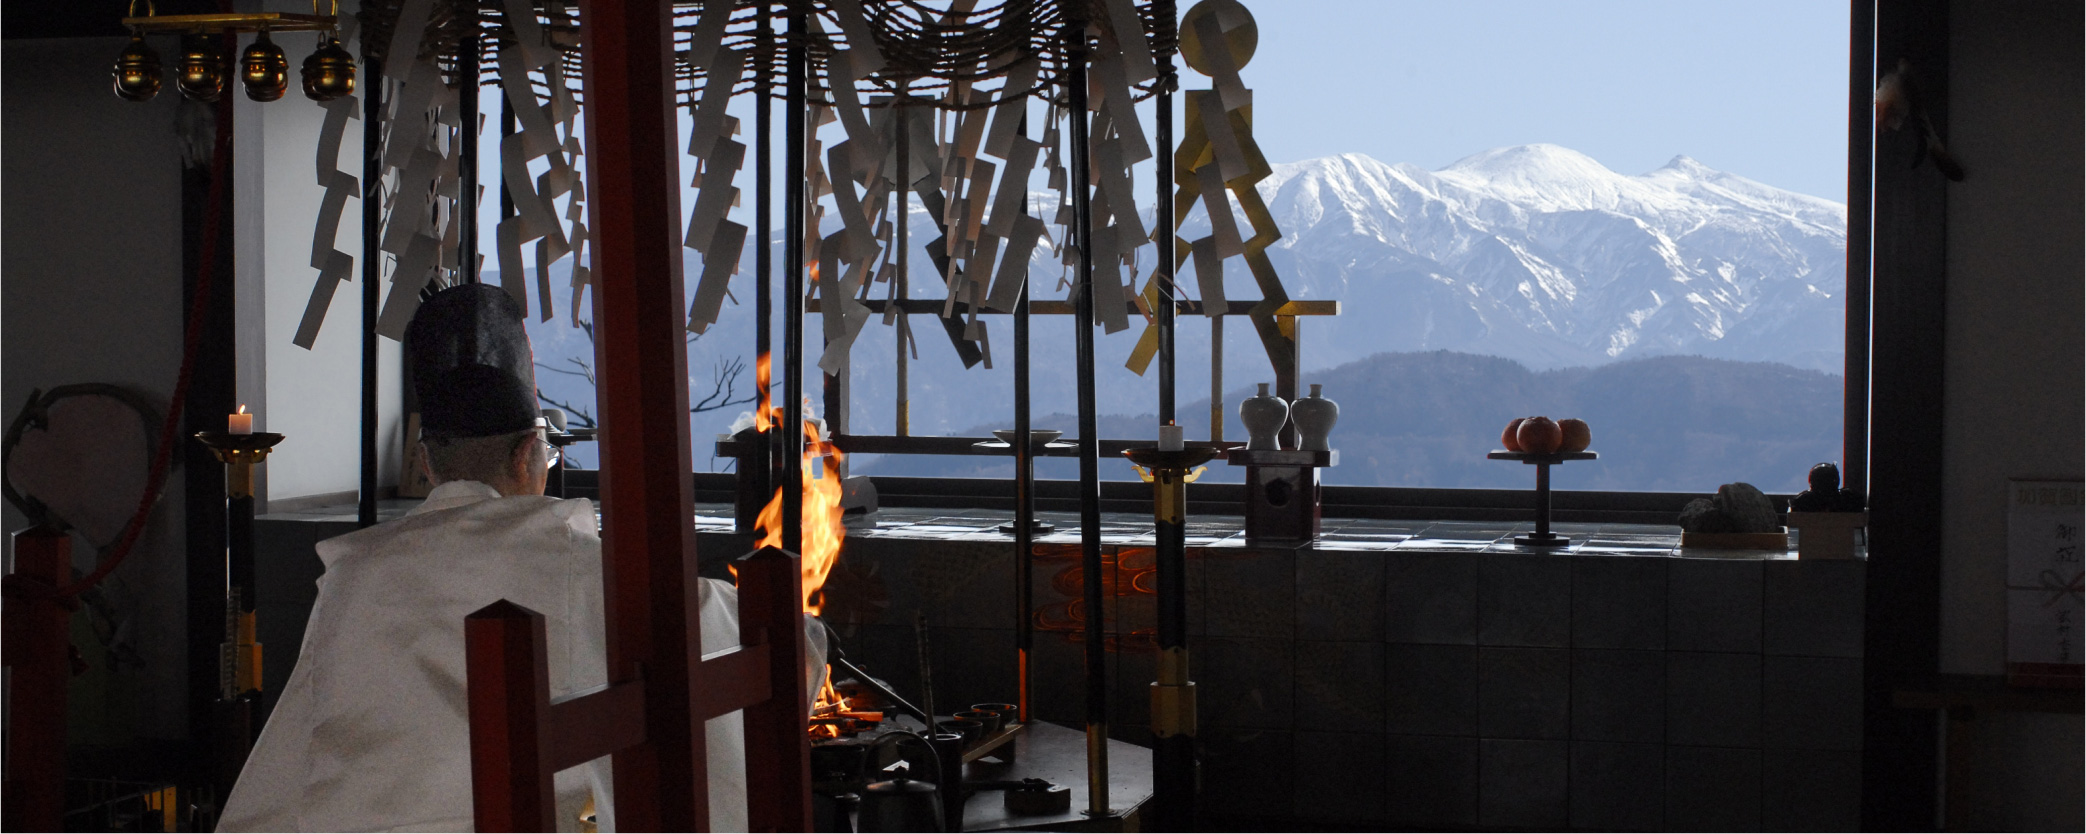 神道火祭り